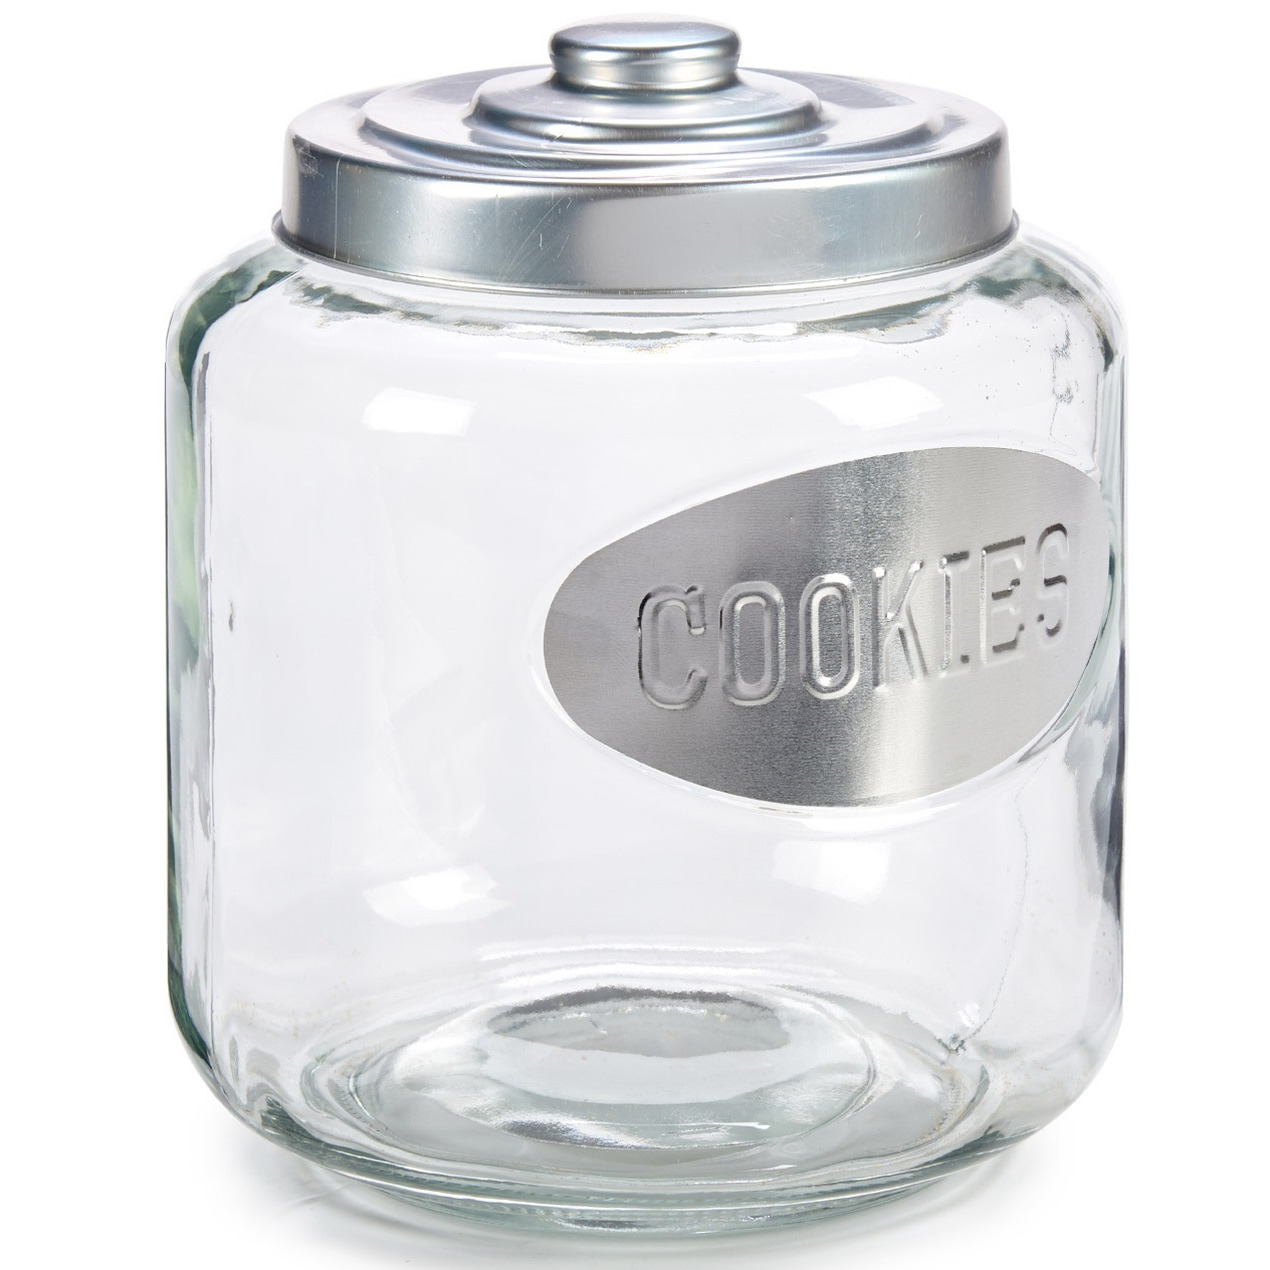 Glazen koektrommel-snoepjes-koekjes voorraad pot met zilverkleurige deksel 4000 ml